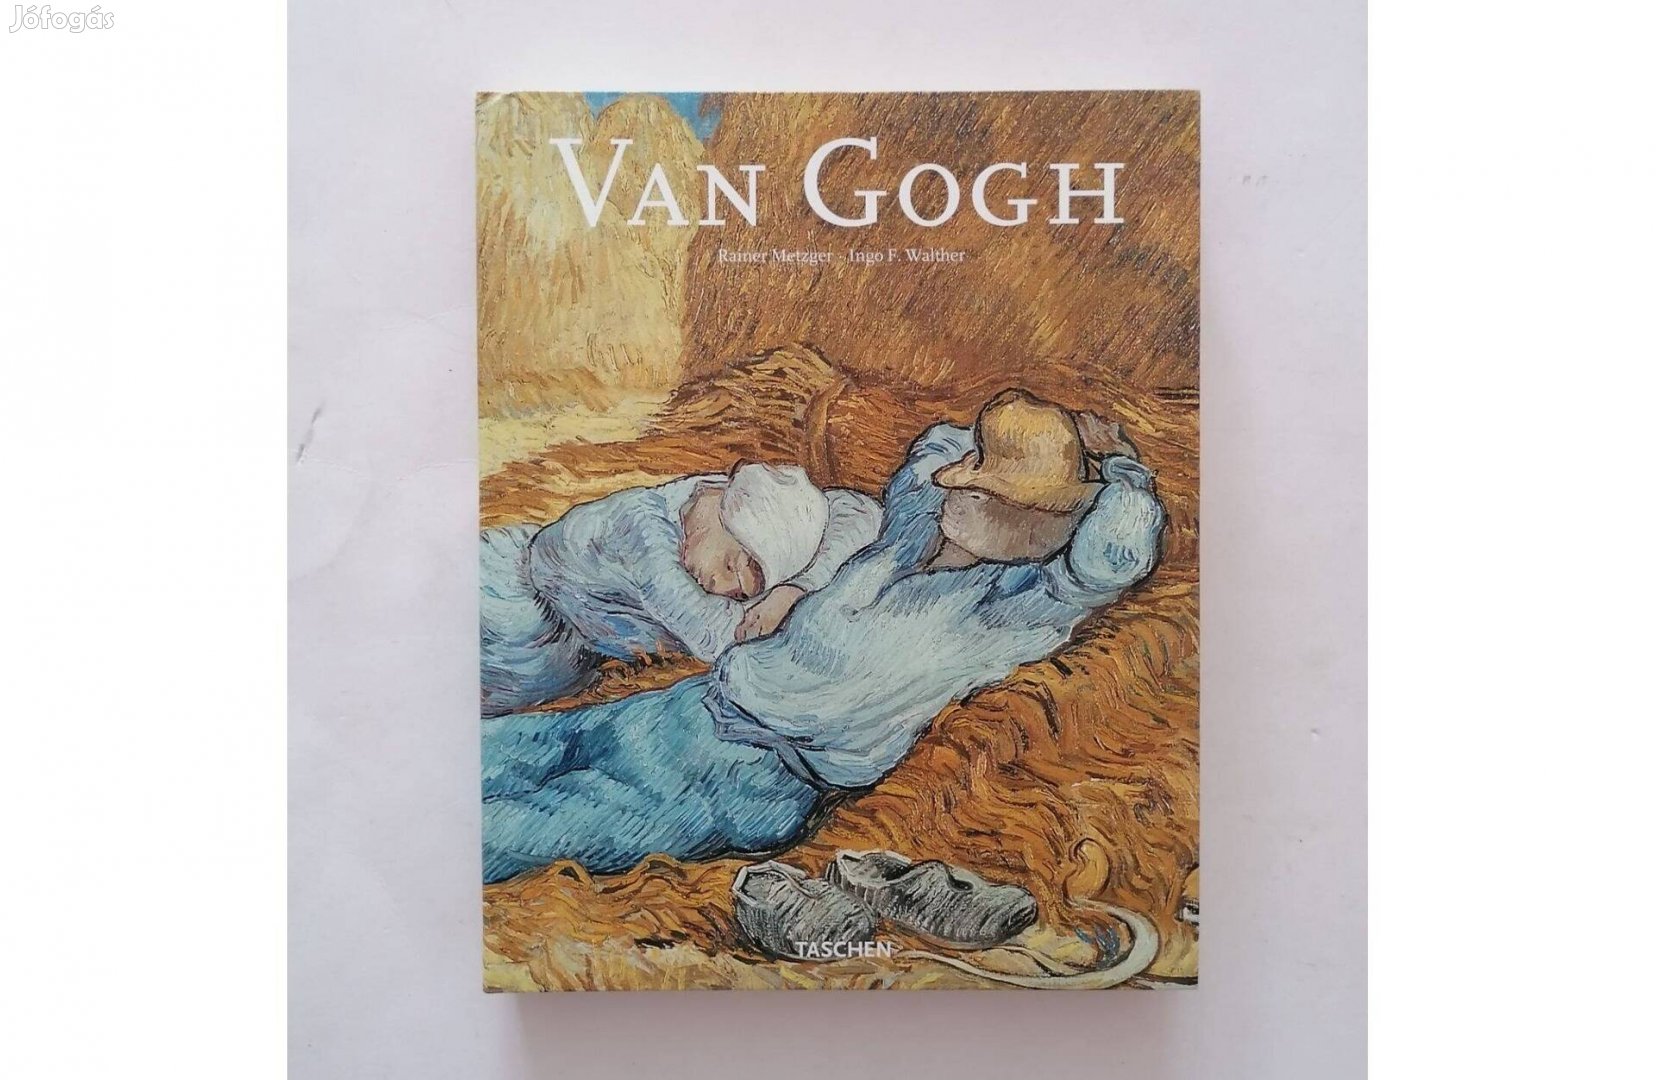 Rainer Metzger - Ingo F. Walther: Van Gogh